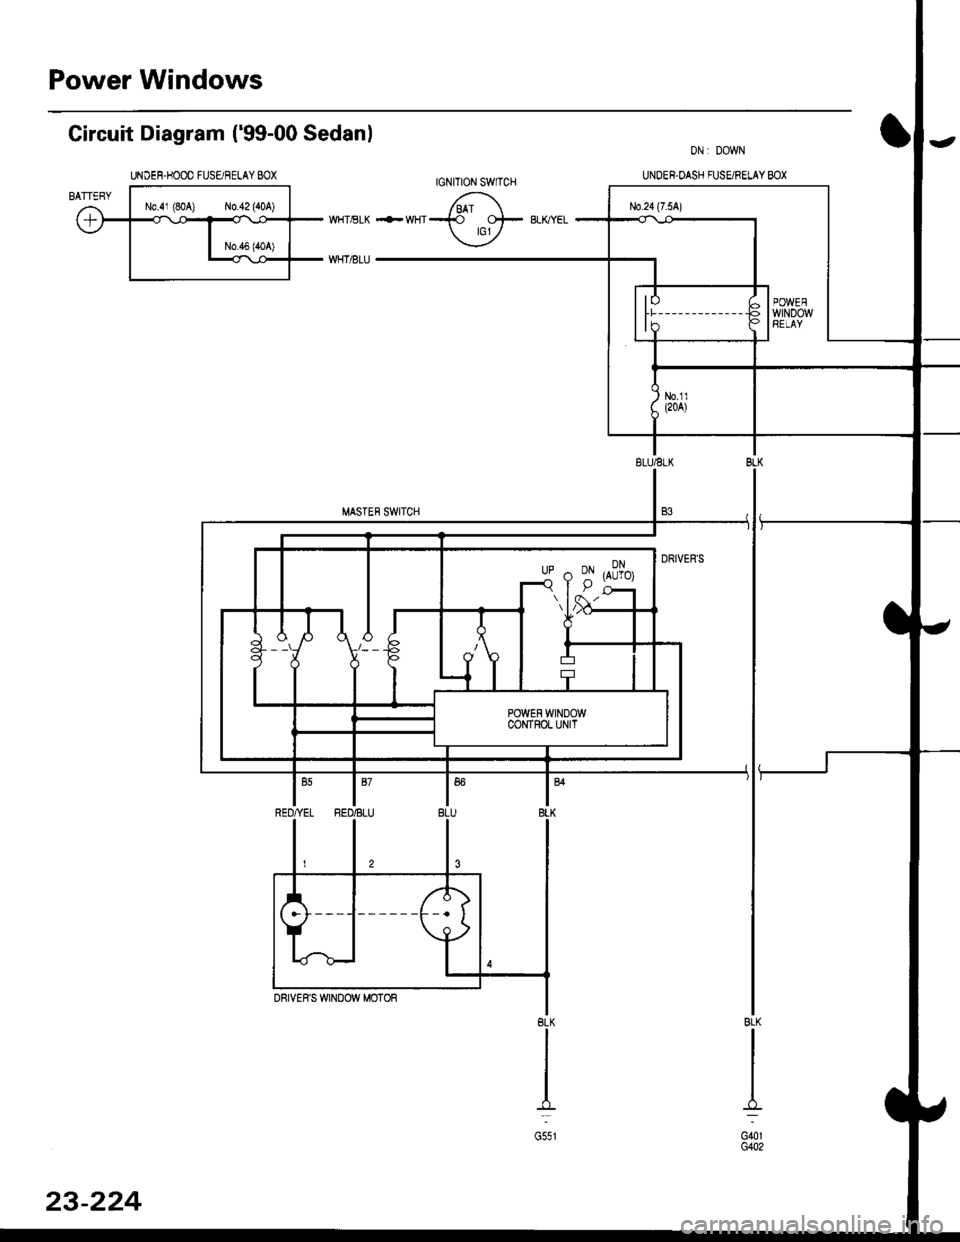 HONDA CIVIC 2000 6.G User Guide Power Windows
Gircuit Diagram (99-00 Sedanl
UNDEF.HOOO FUSE/RELAY BOX
G401G402
BLK
I-.=
G551
23-224 